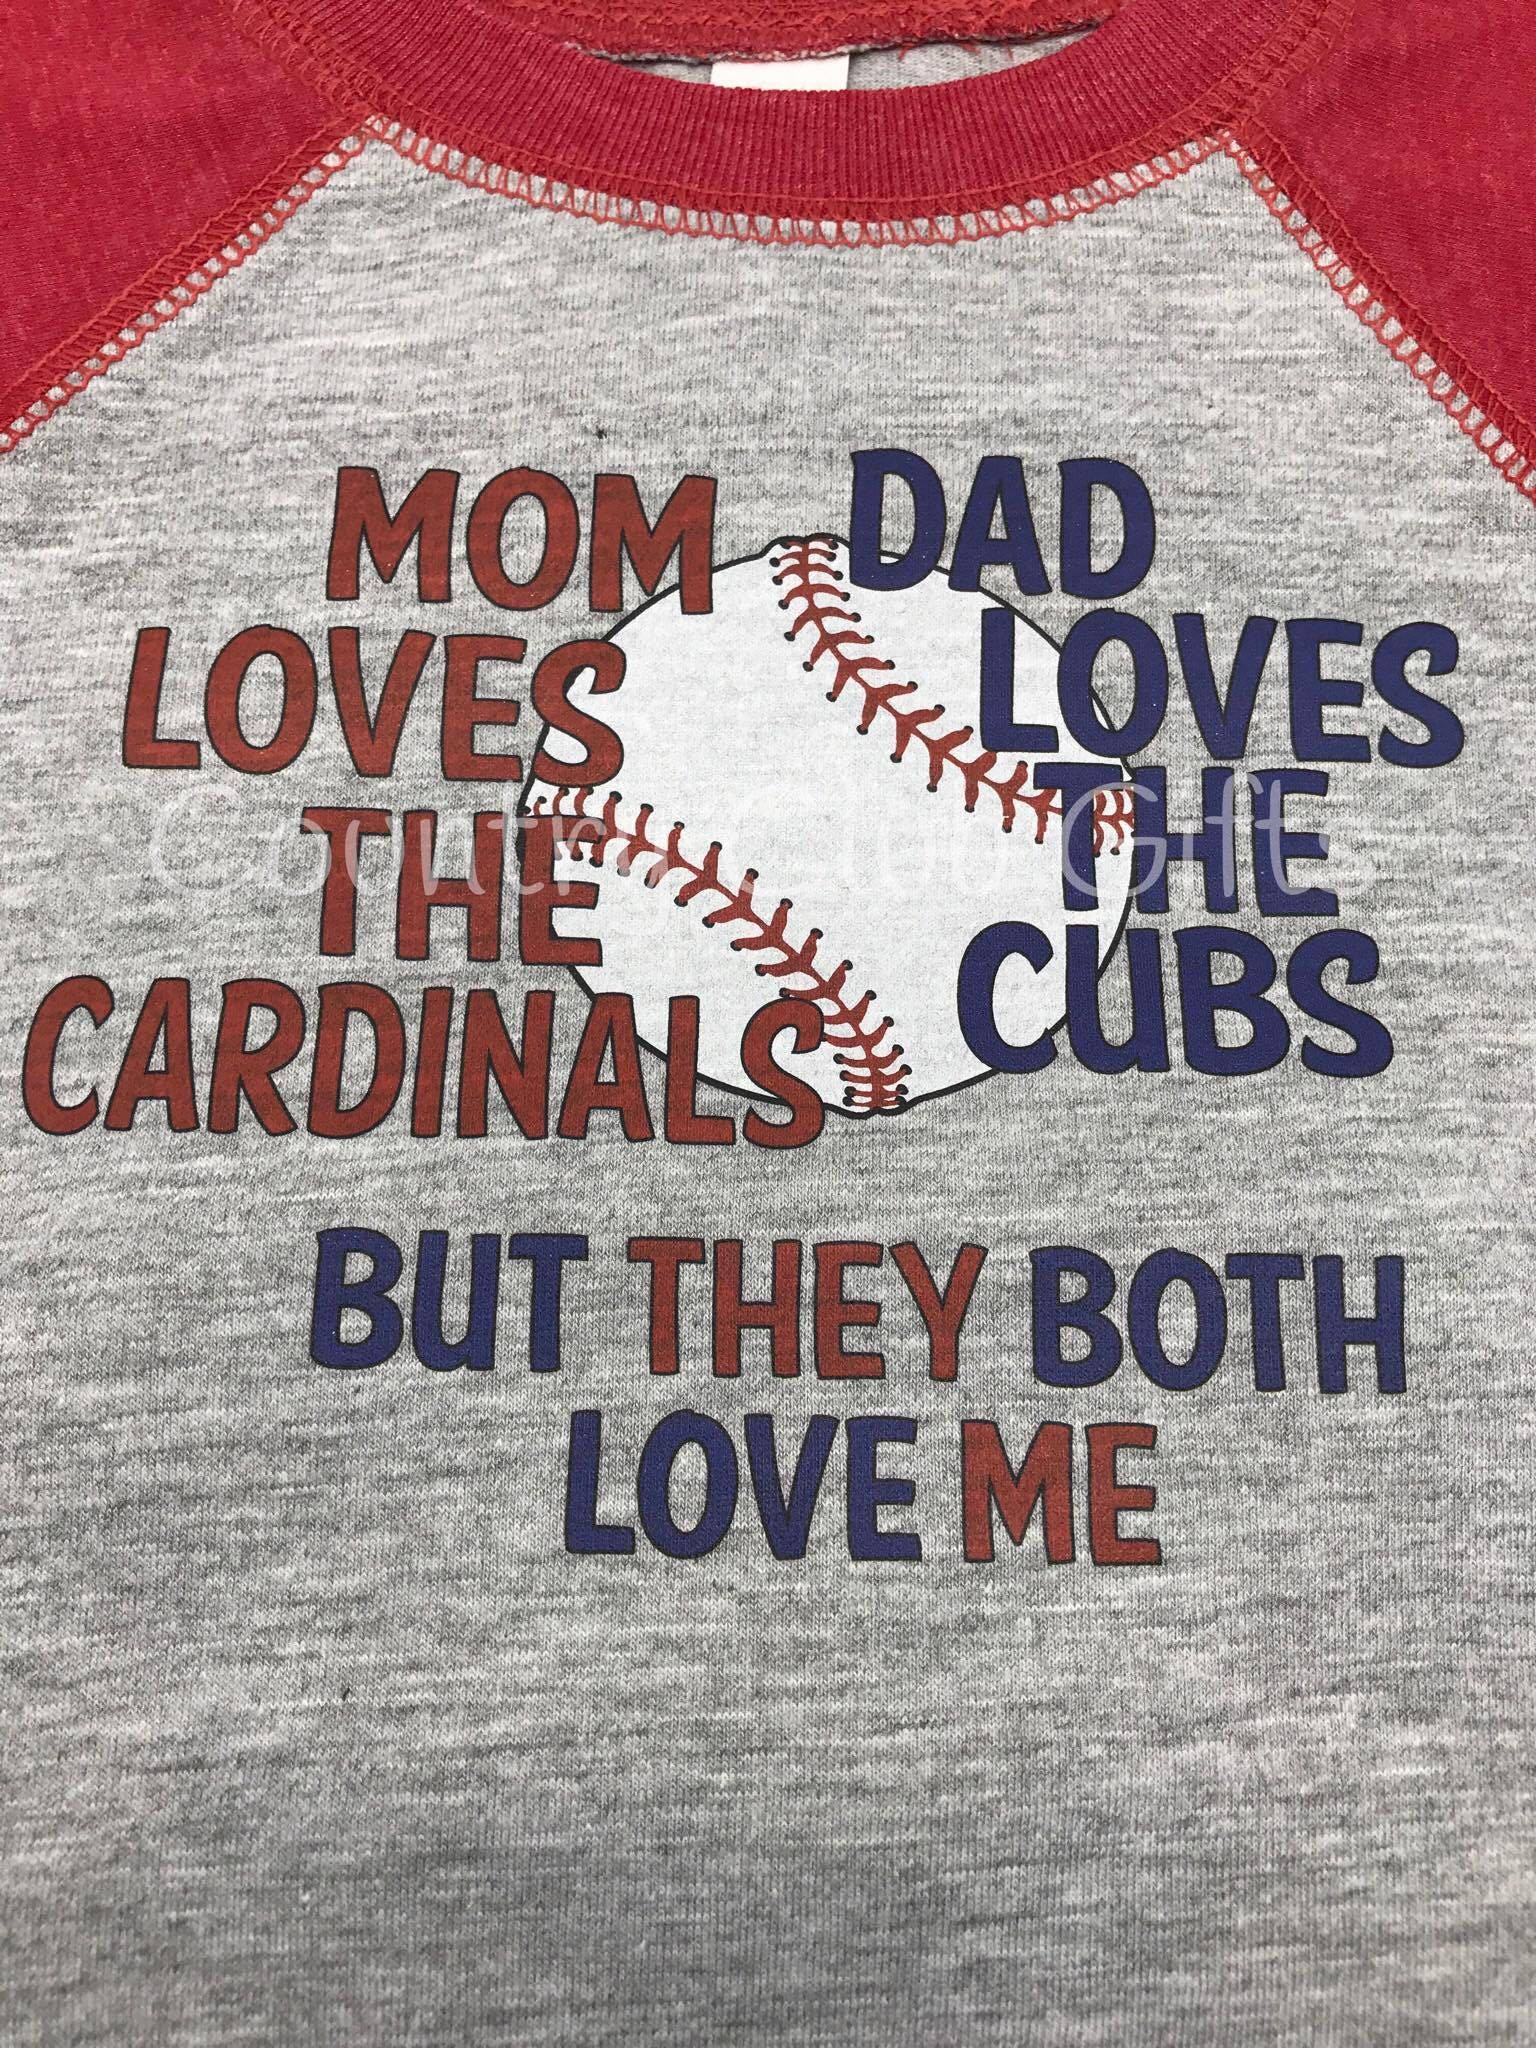 House Divided | Cardinals | Cubs T-Shirt | Baseball Shirt | Bodysuit | Shirt | Baby Gift | Sports Rivals | Team | Raglan Sleeve | Baseball